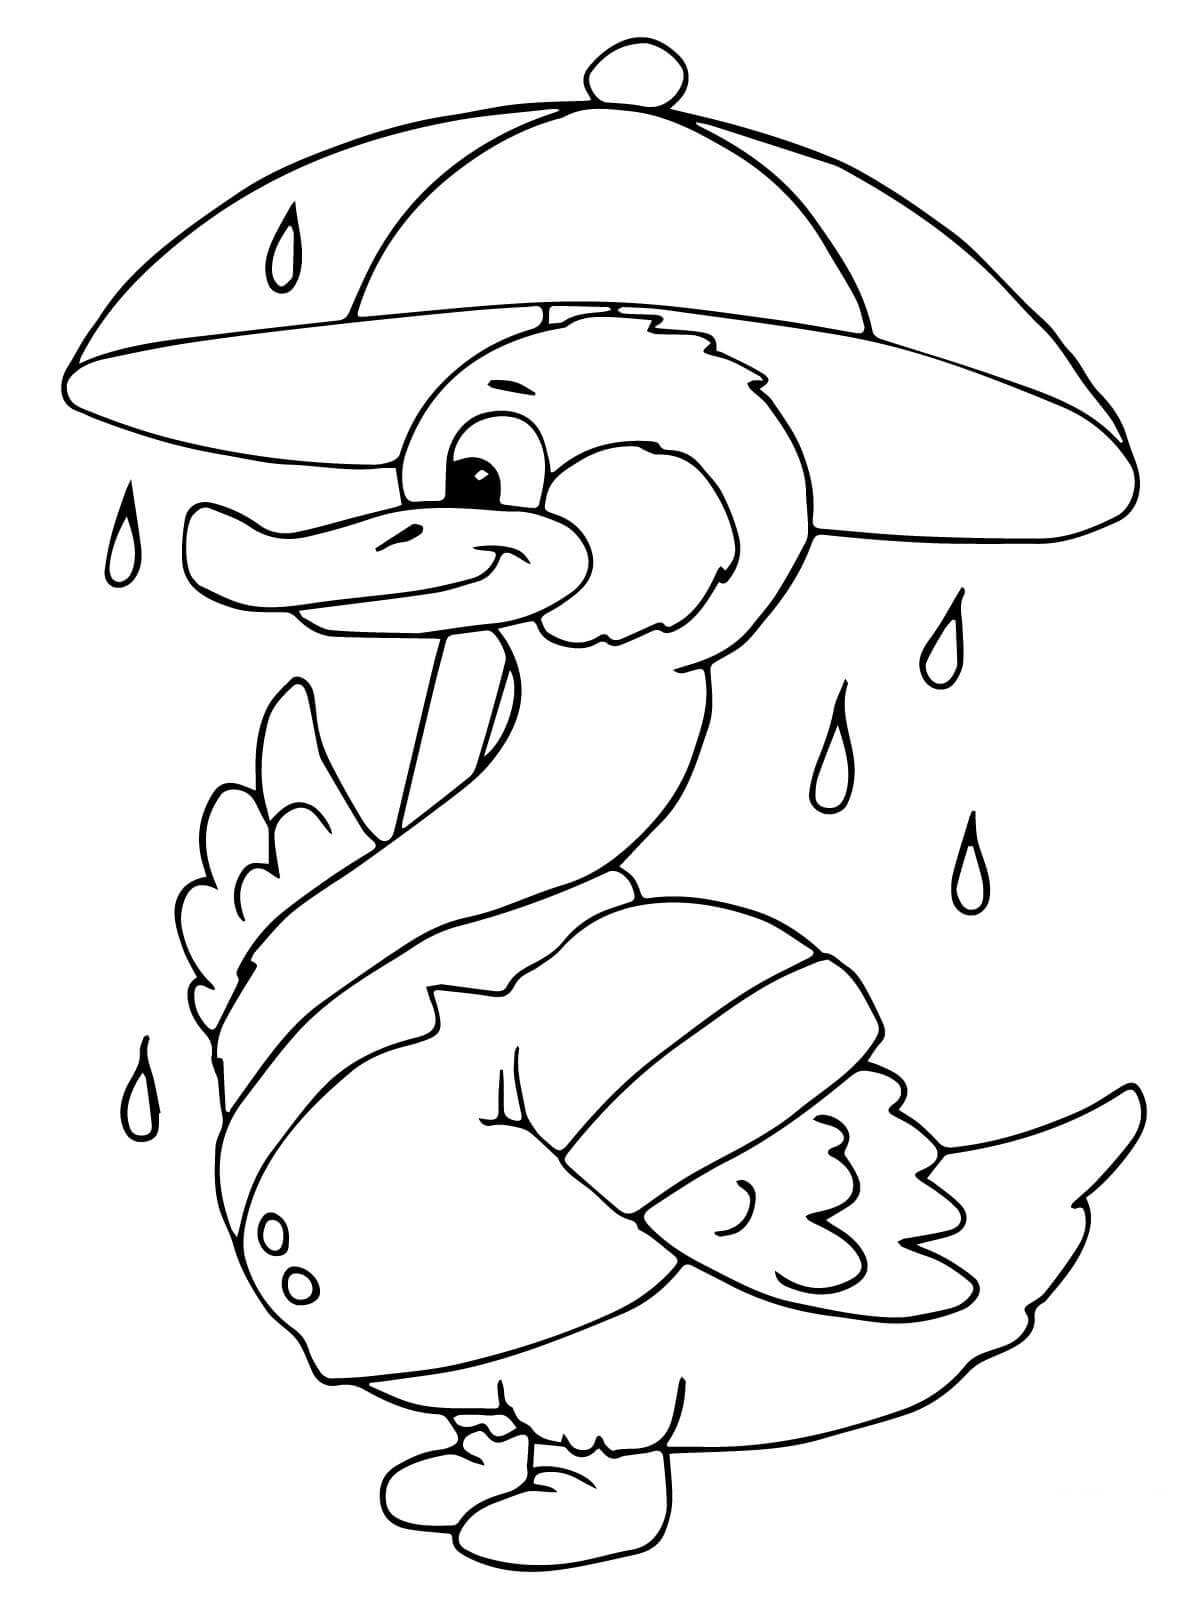 Утка с зонтиком под дождём от Ducks